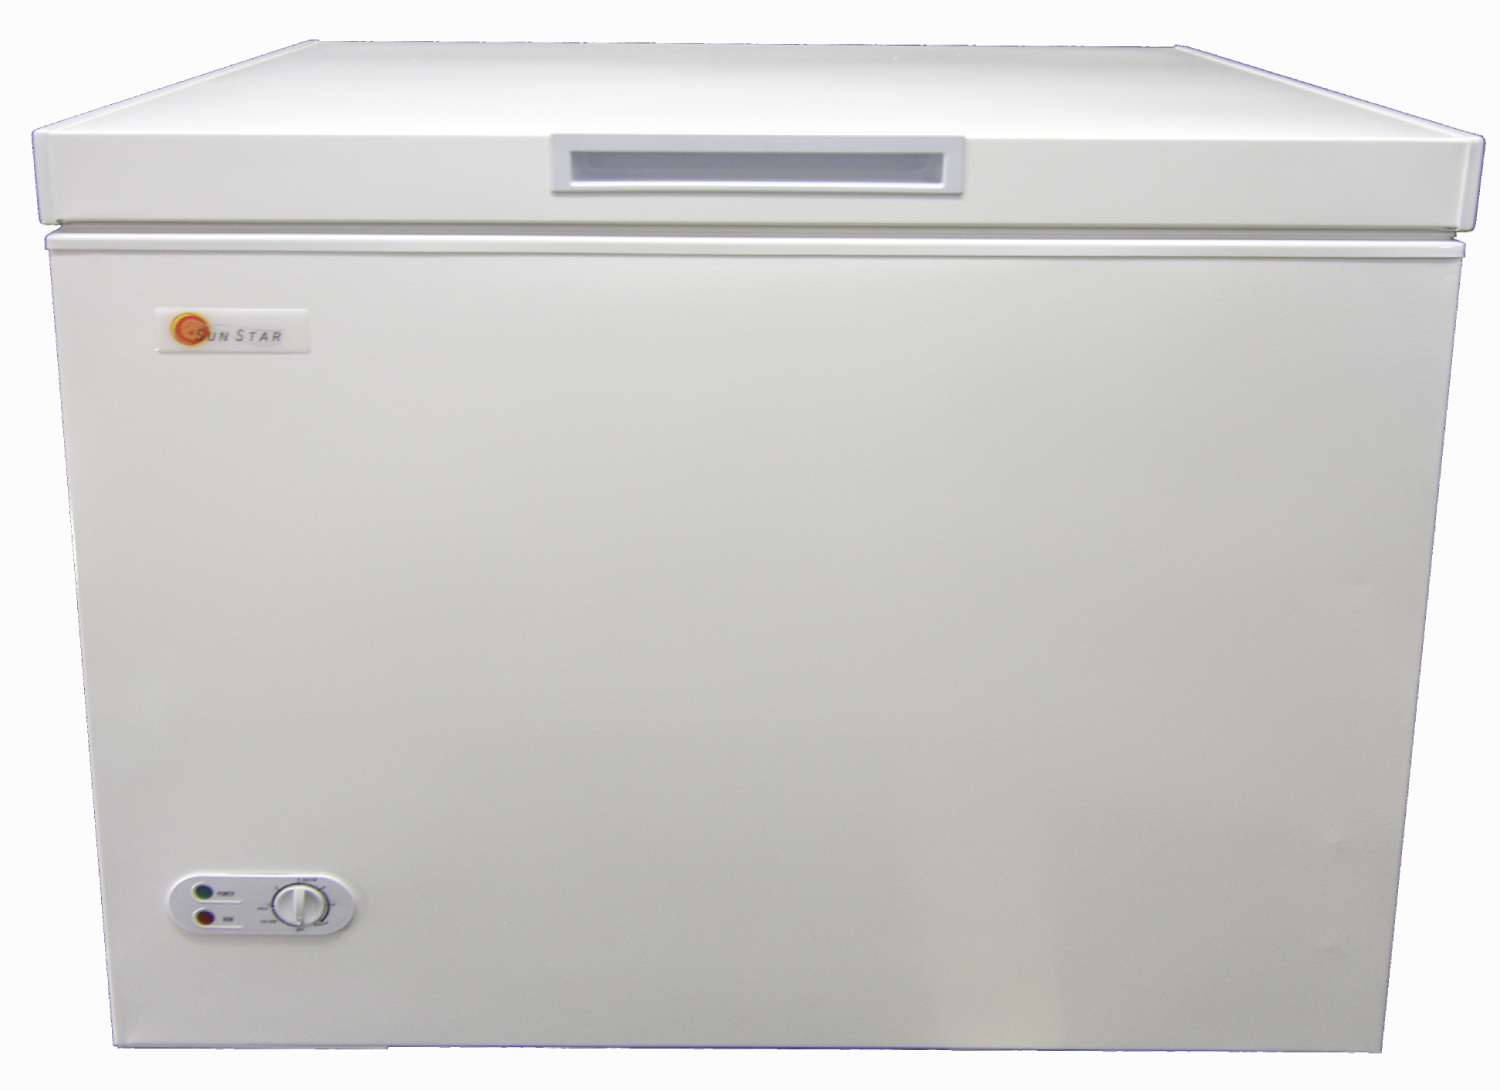 https://www.warehouseappliance.com/wp-content/uploads/2019/04/ST-8CF-sun-star-8-cu-ft-freezer-refrigerator-front.jpg